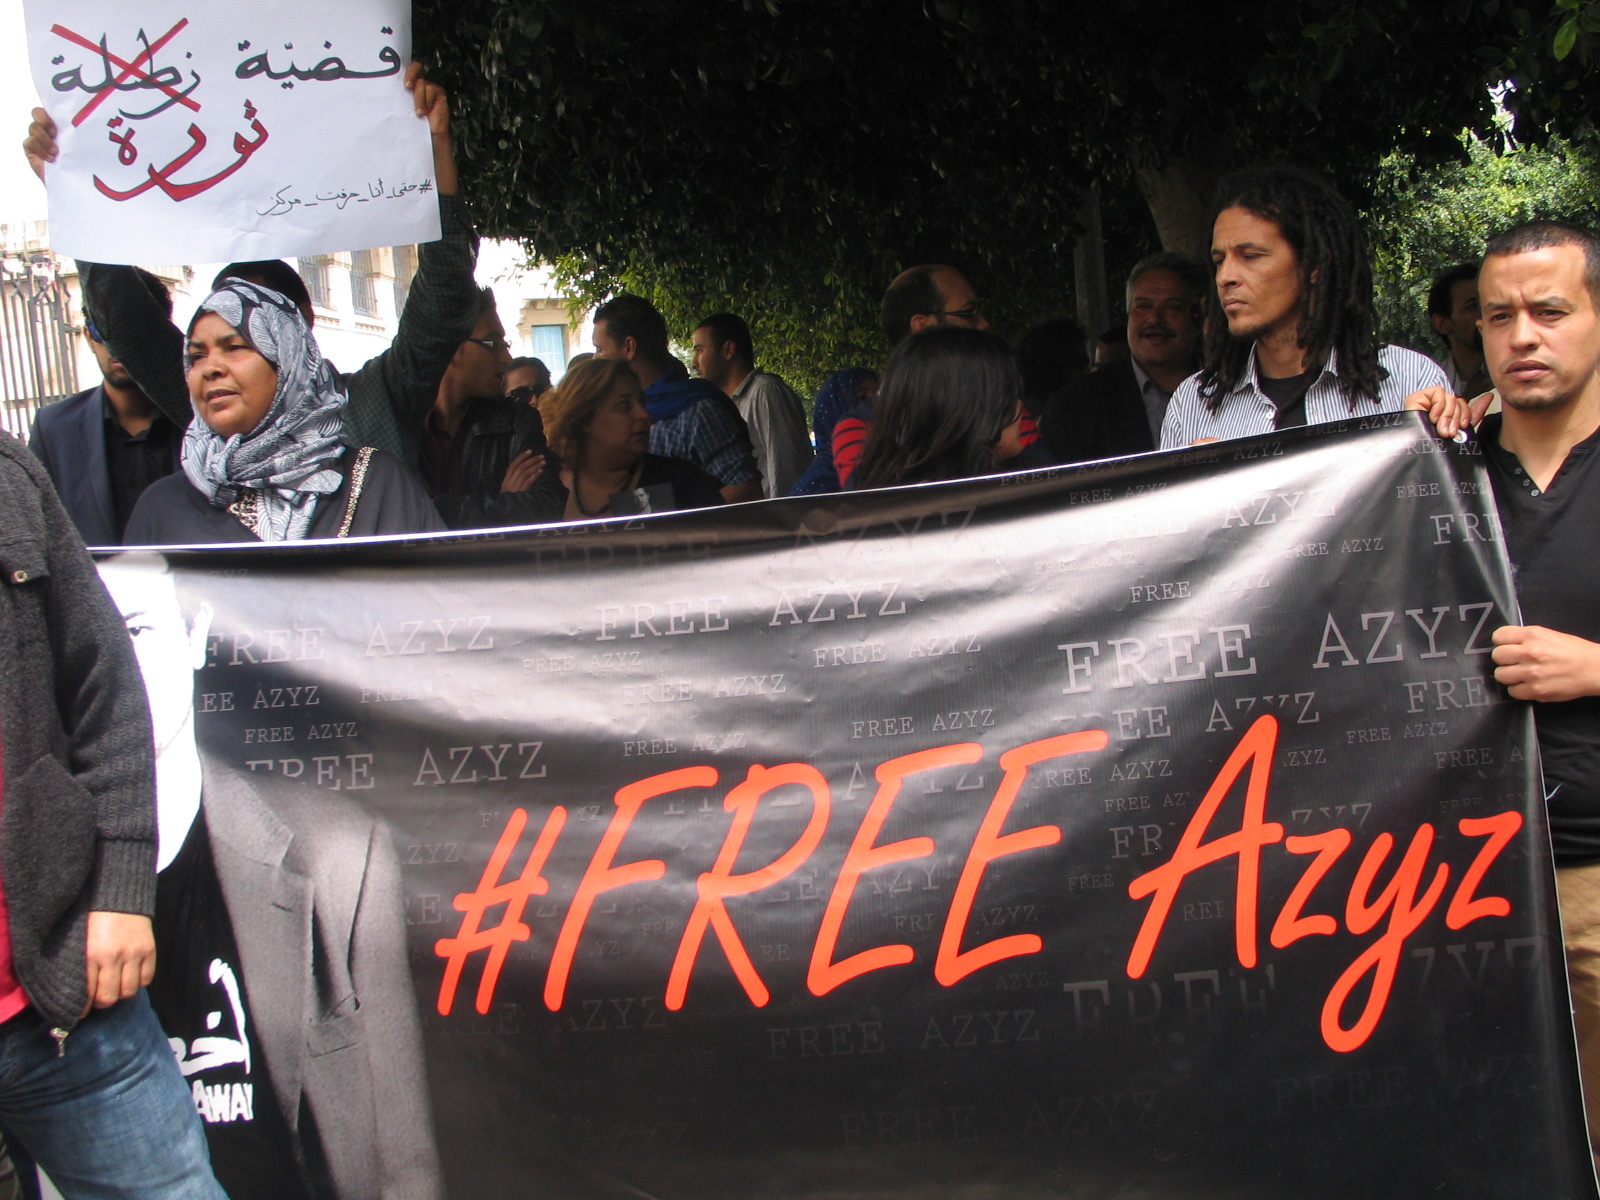 15 maggio 2014: sit in per la liberazione di Azyz Amami
Foto: Patrizia Mancini